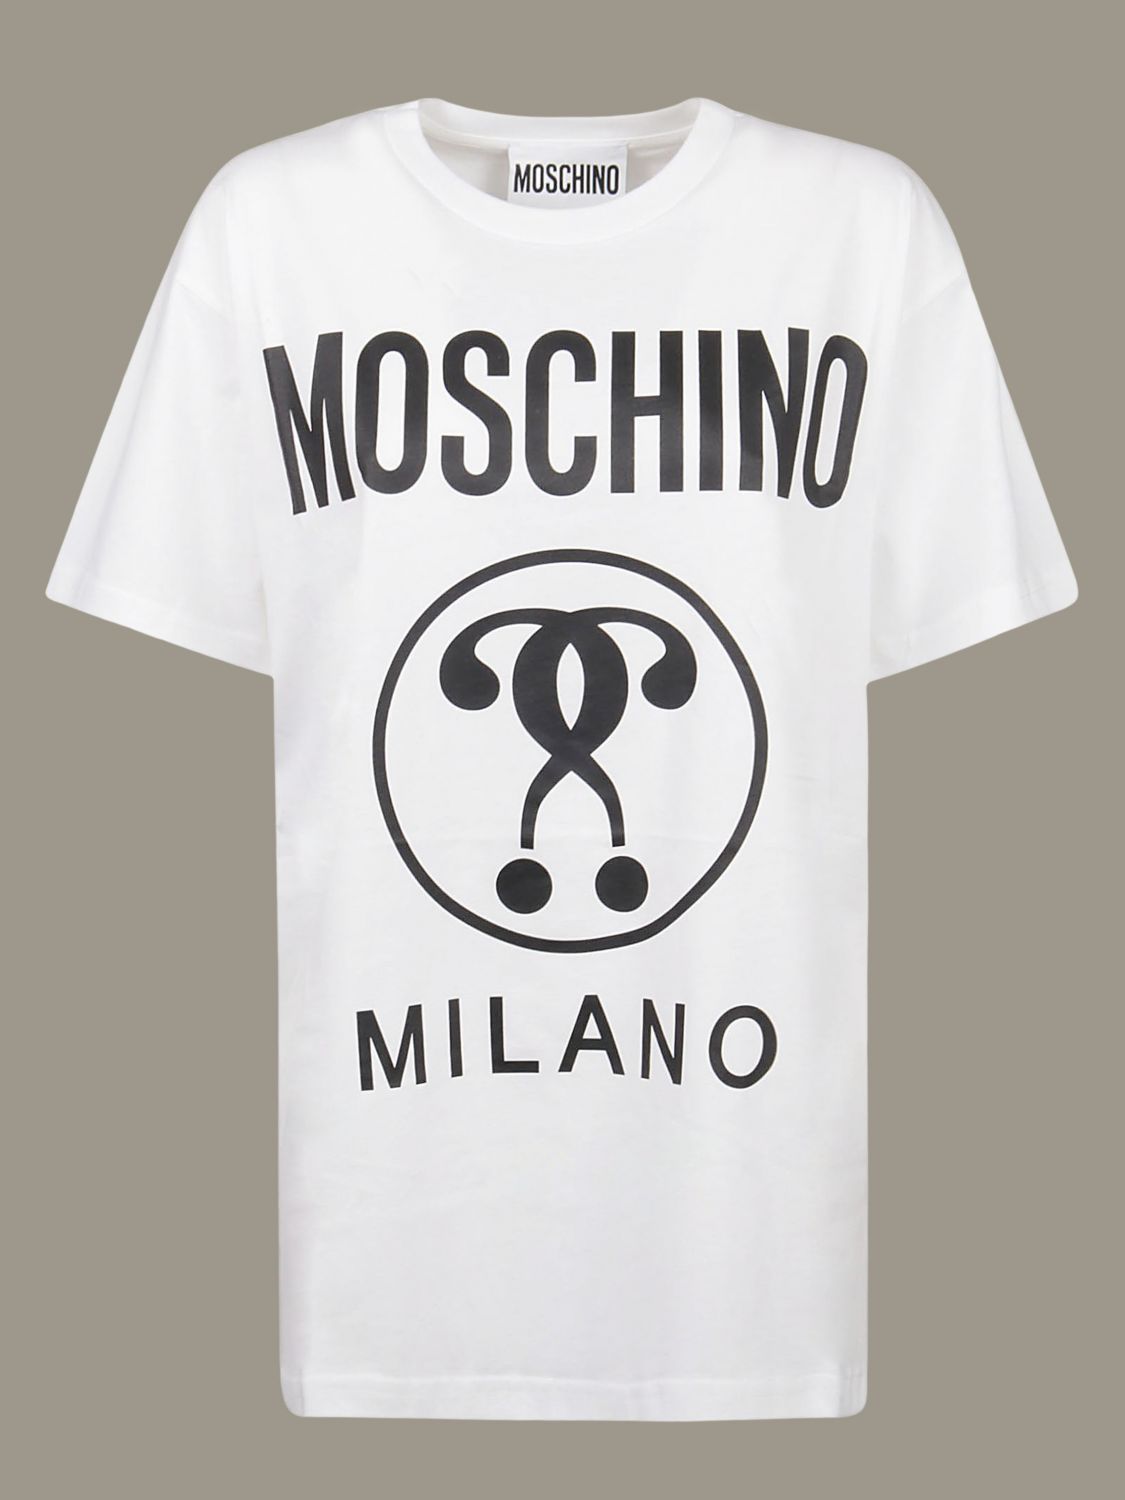 moschino milano white t shirt